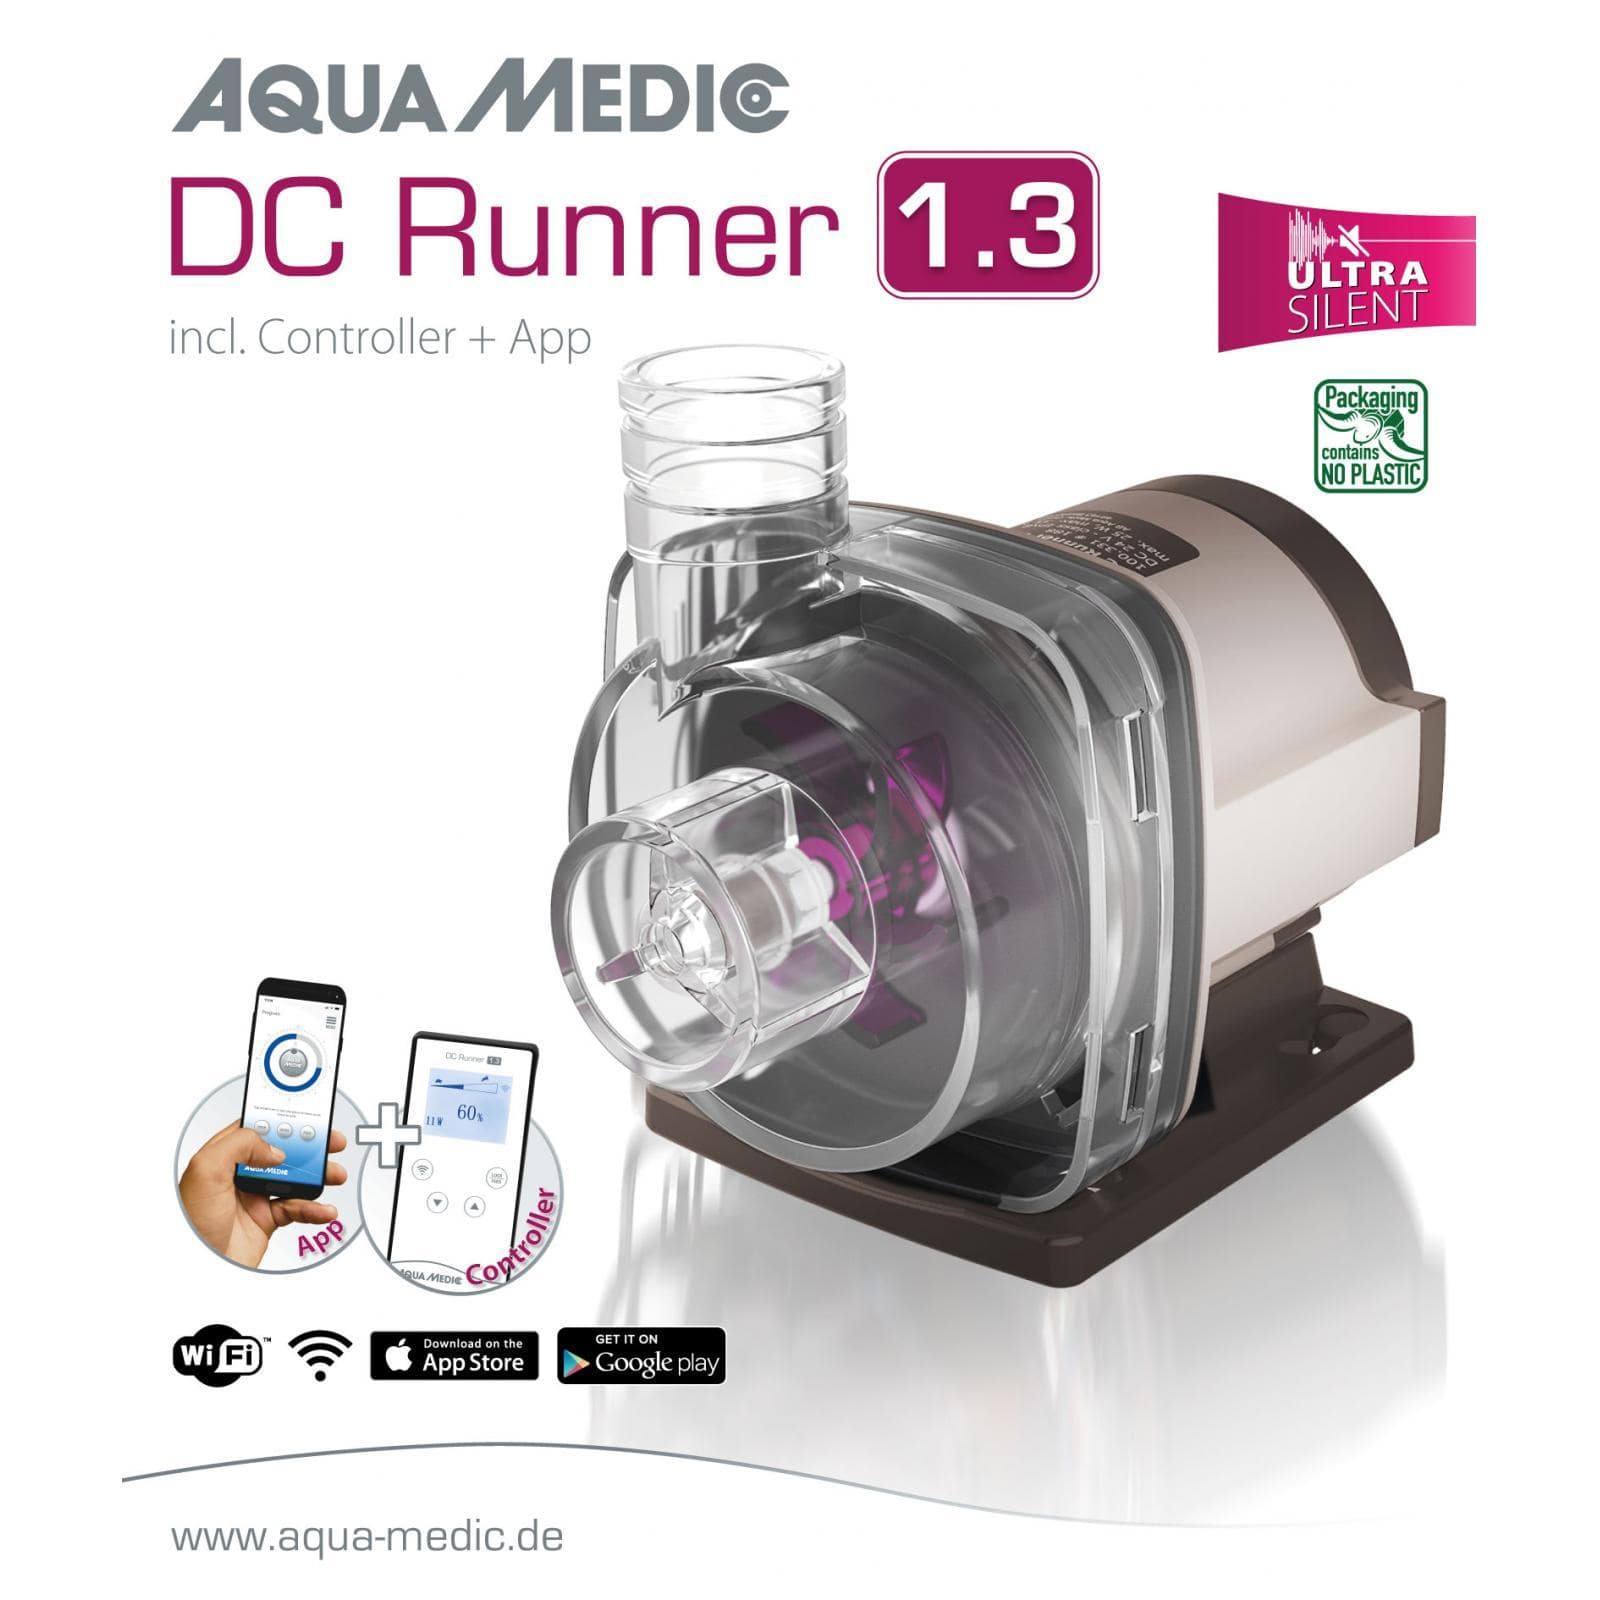 aqua-medic-dc-runner-1-3-ultra-silent-pompe-1200-l-h-avec-controleur-pour-aquarium-d-eau-douce-et-d-eau-mer-1-min